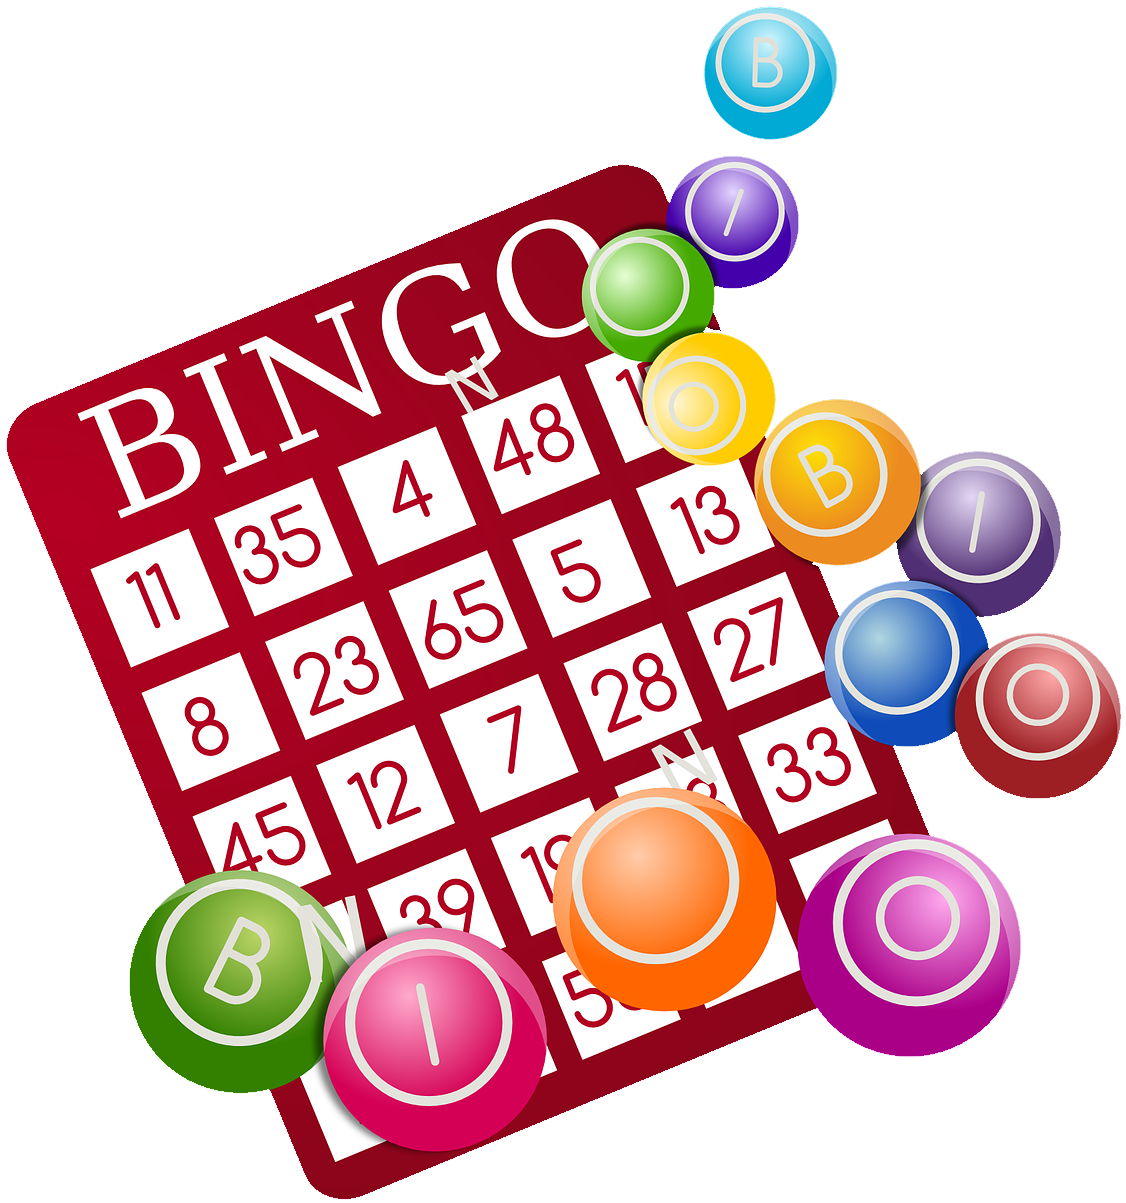 Bingo Online Grátis e mais jogos no Jogatina